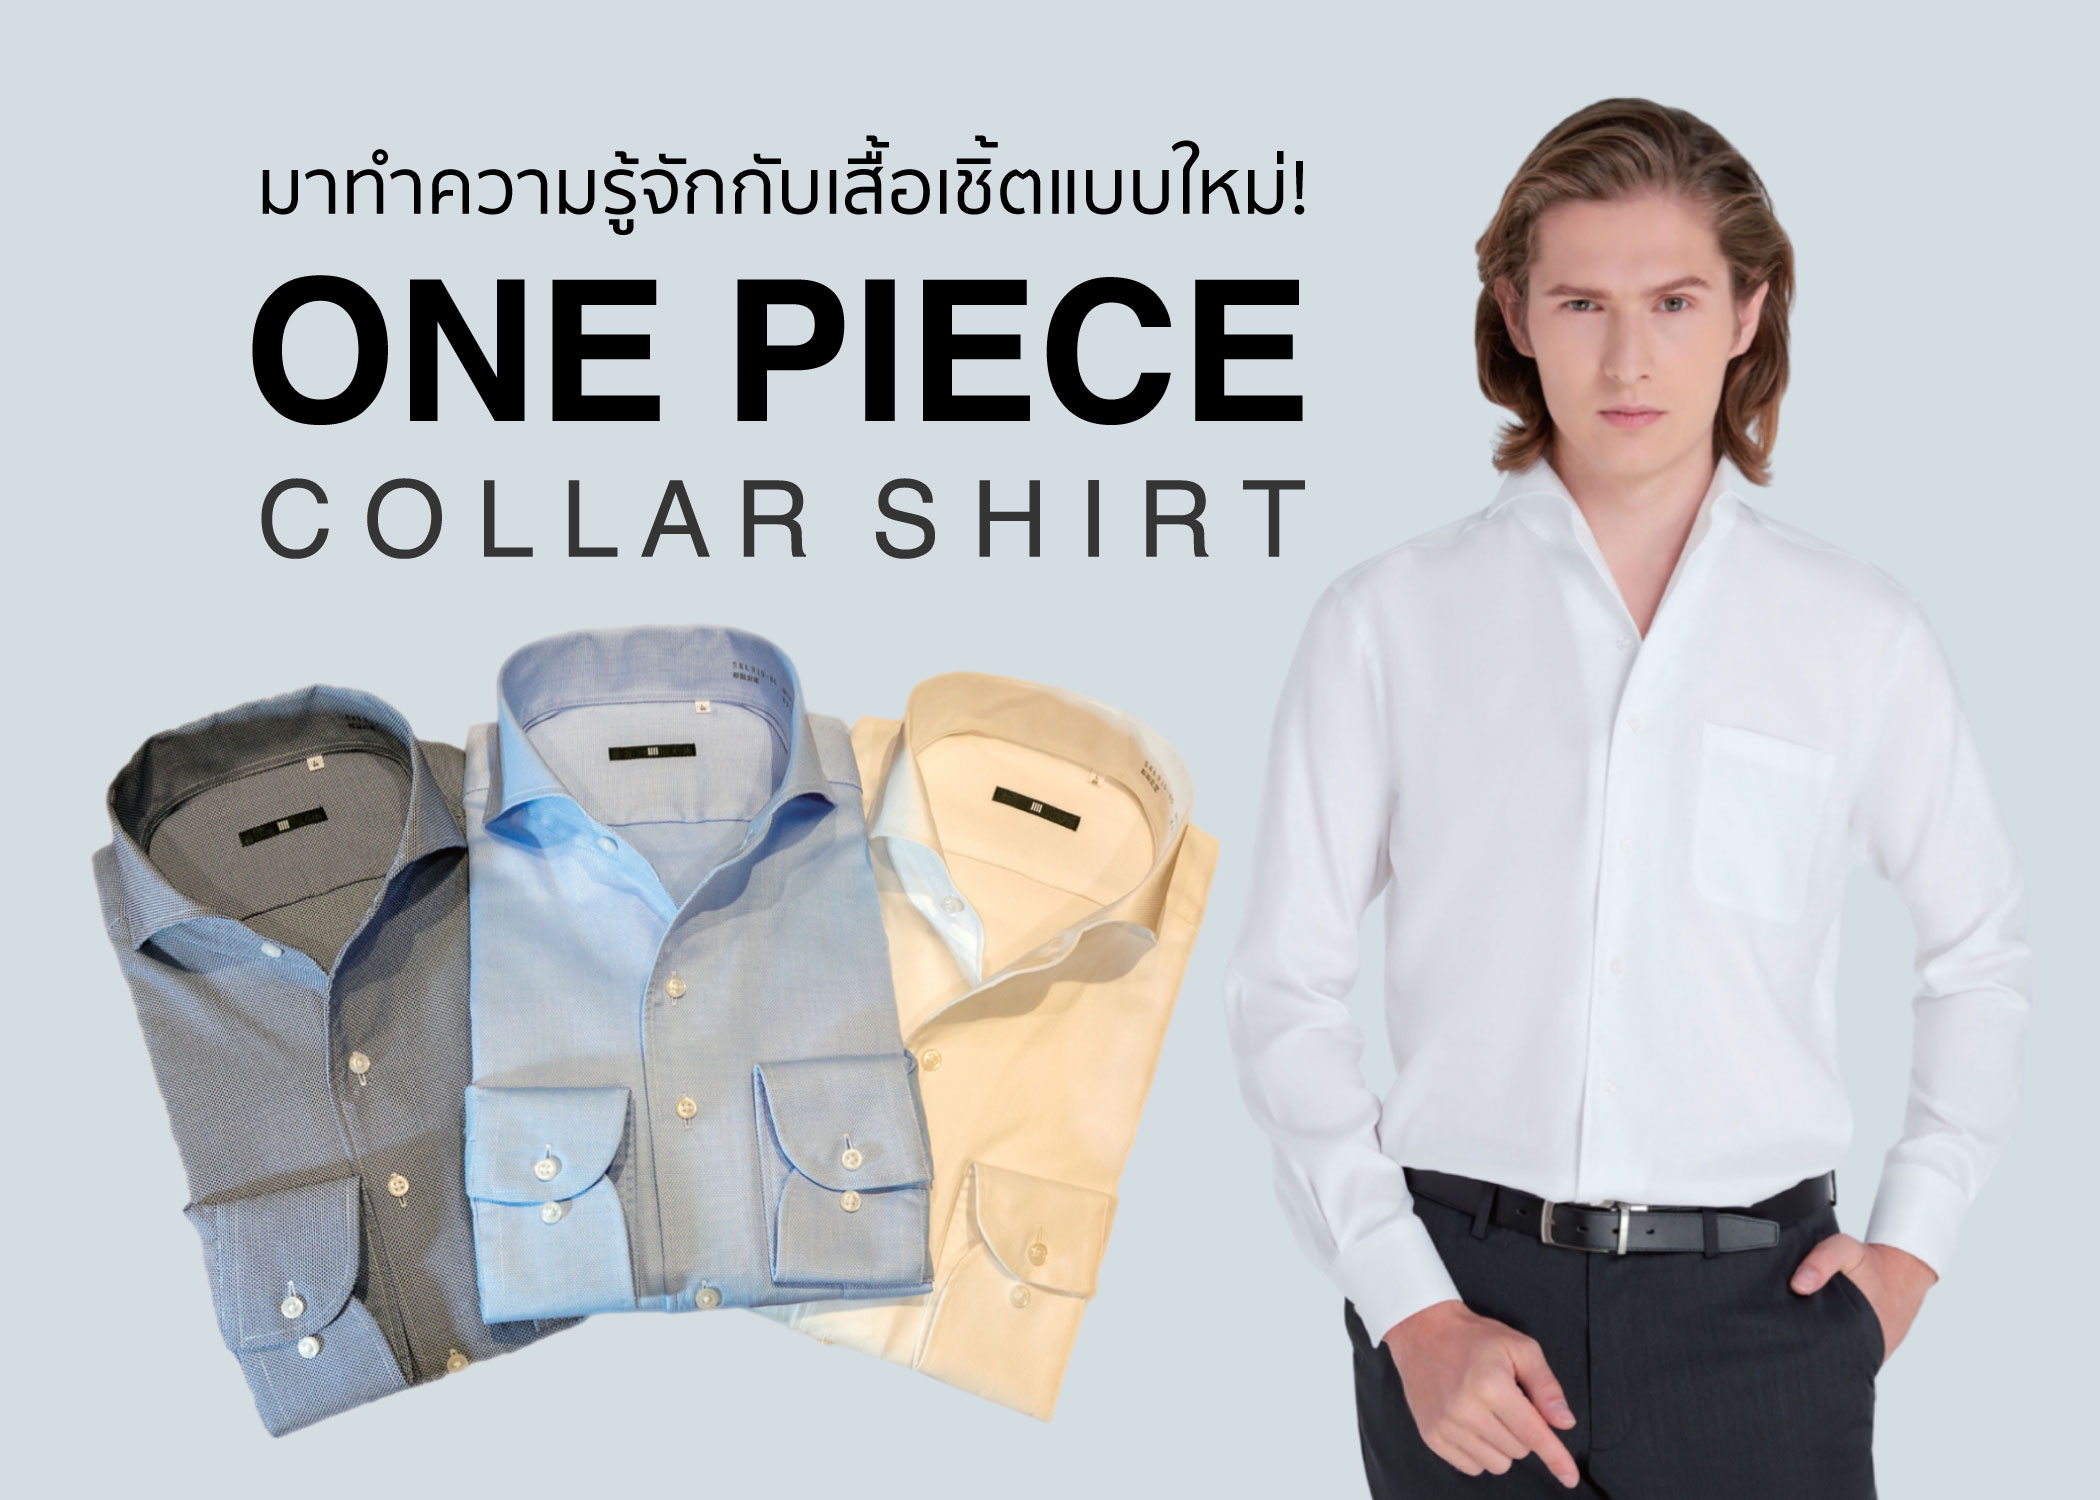 ทำความรู้จักกับเสื้อเชิ้ตแนวใหม่ One piece collar shirt!